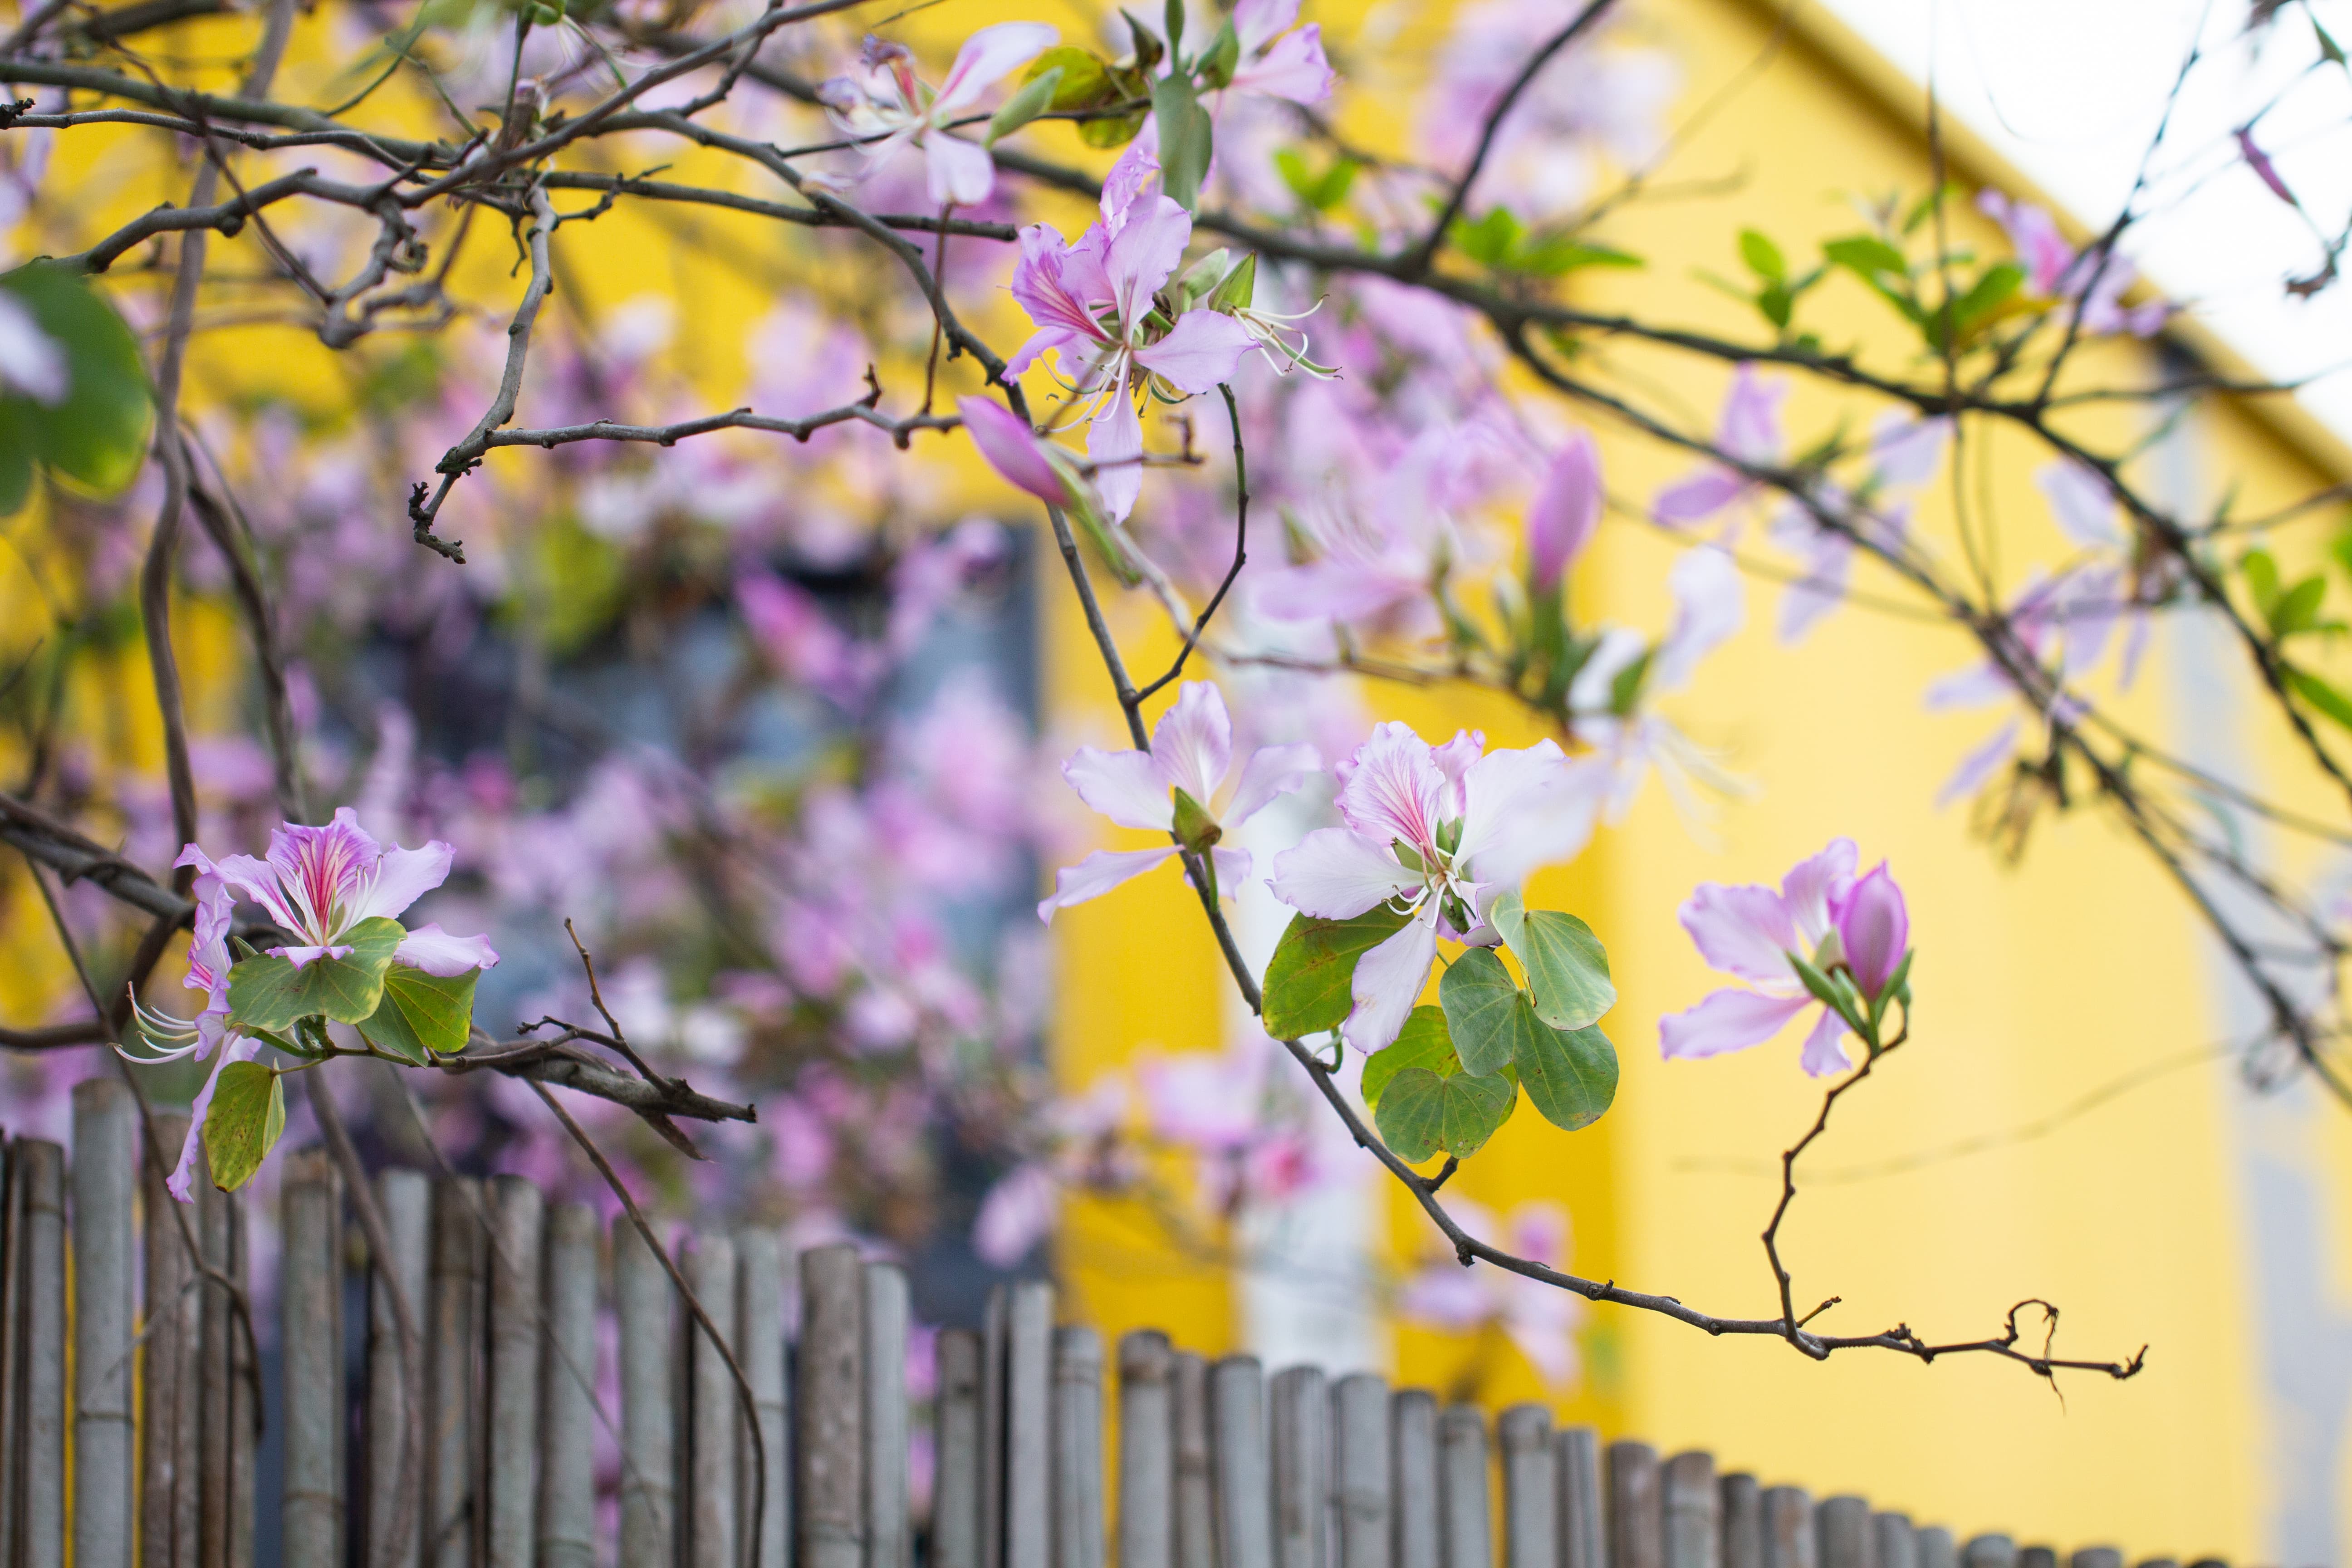 有一种唯美意境,叫竹篱笆外的紫荆花,简直越看越美!